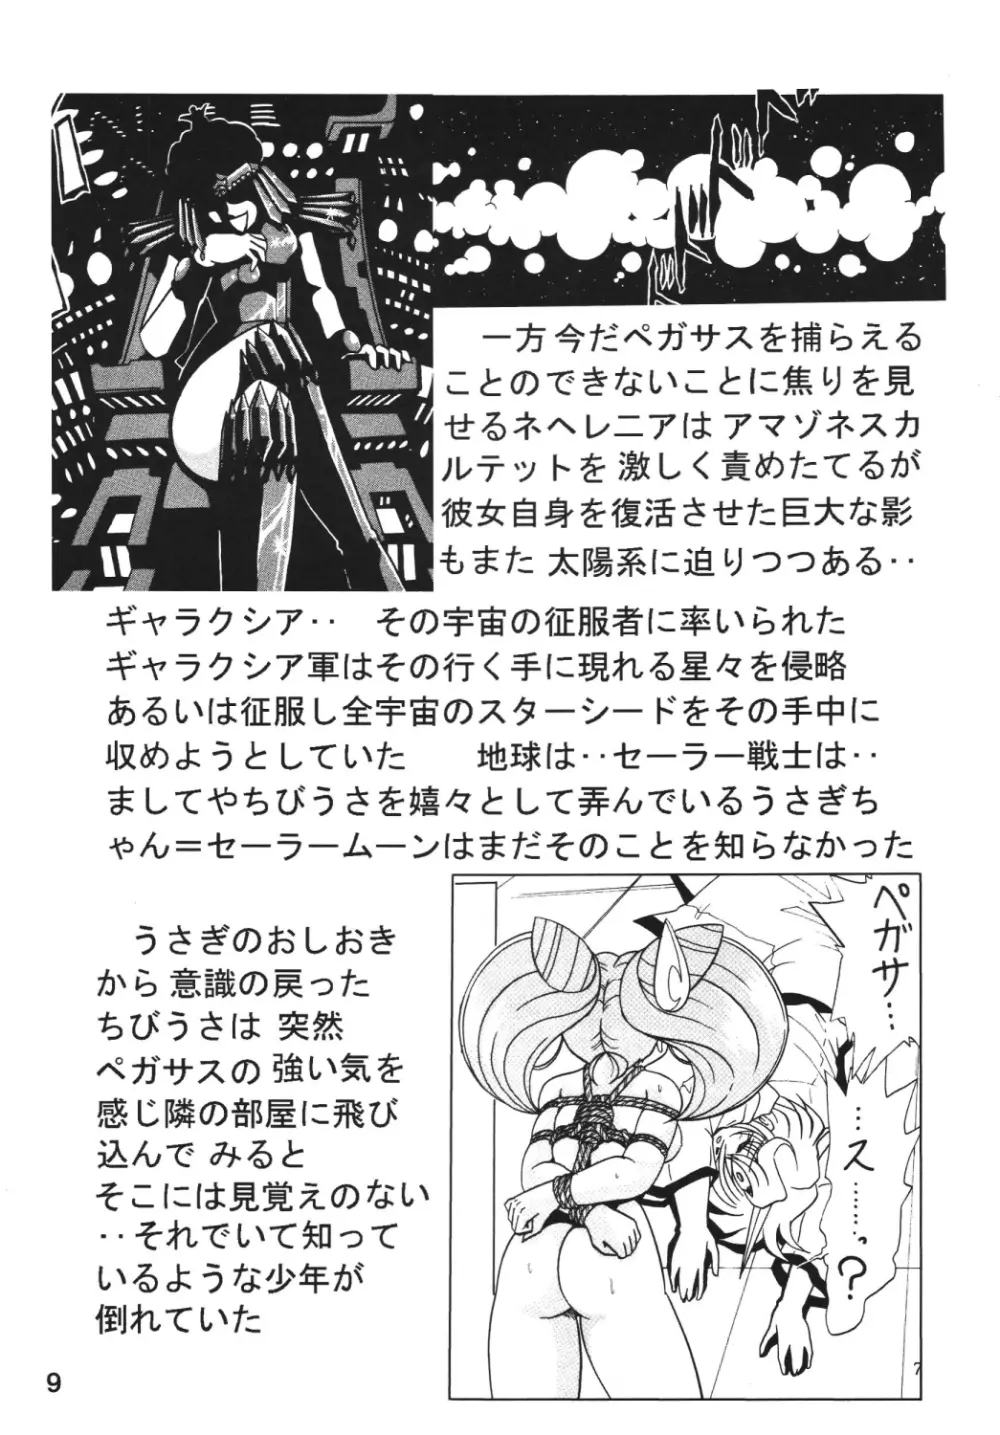 サイレント・サターン SS vol.7 - page8